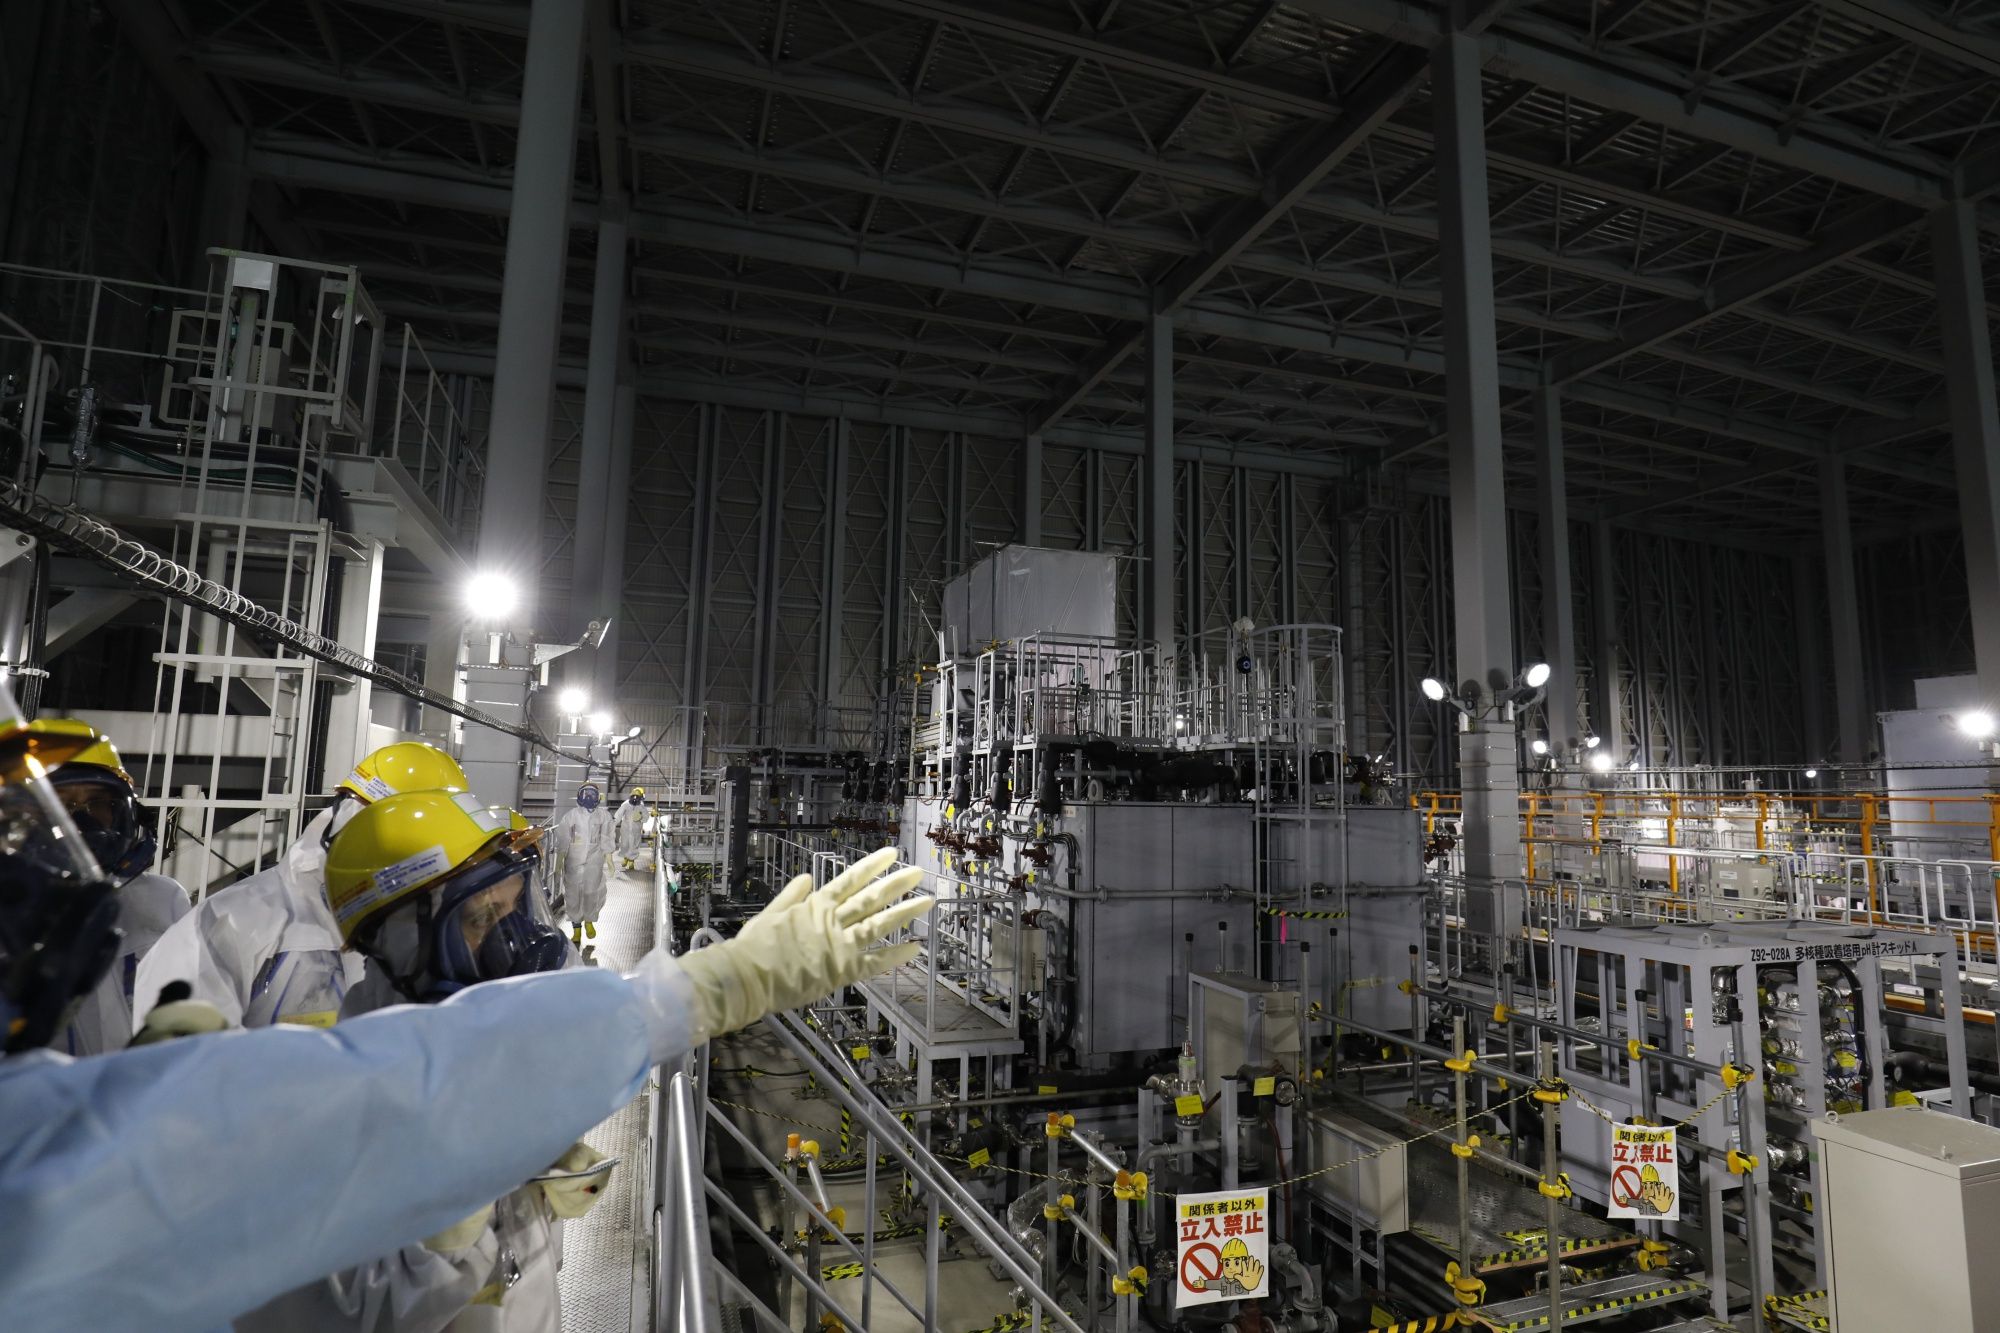 إعلاميون في جولة بمنشأة معالجة المياه باستخدام "نظام معالجة السوائل المتقدم" بمحطة "فوكوشيما" للطاقة النووية